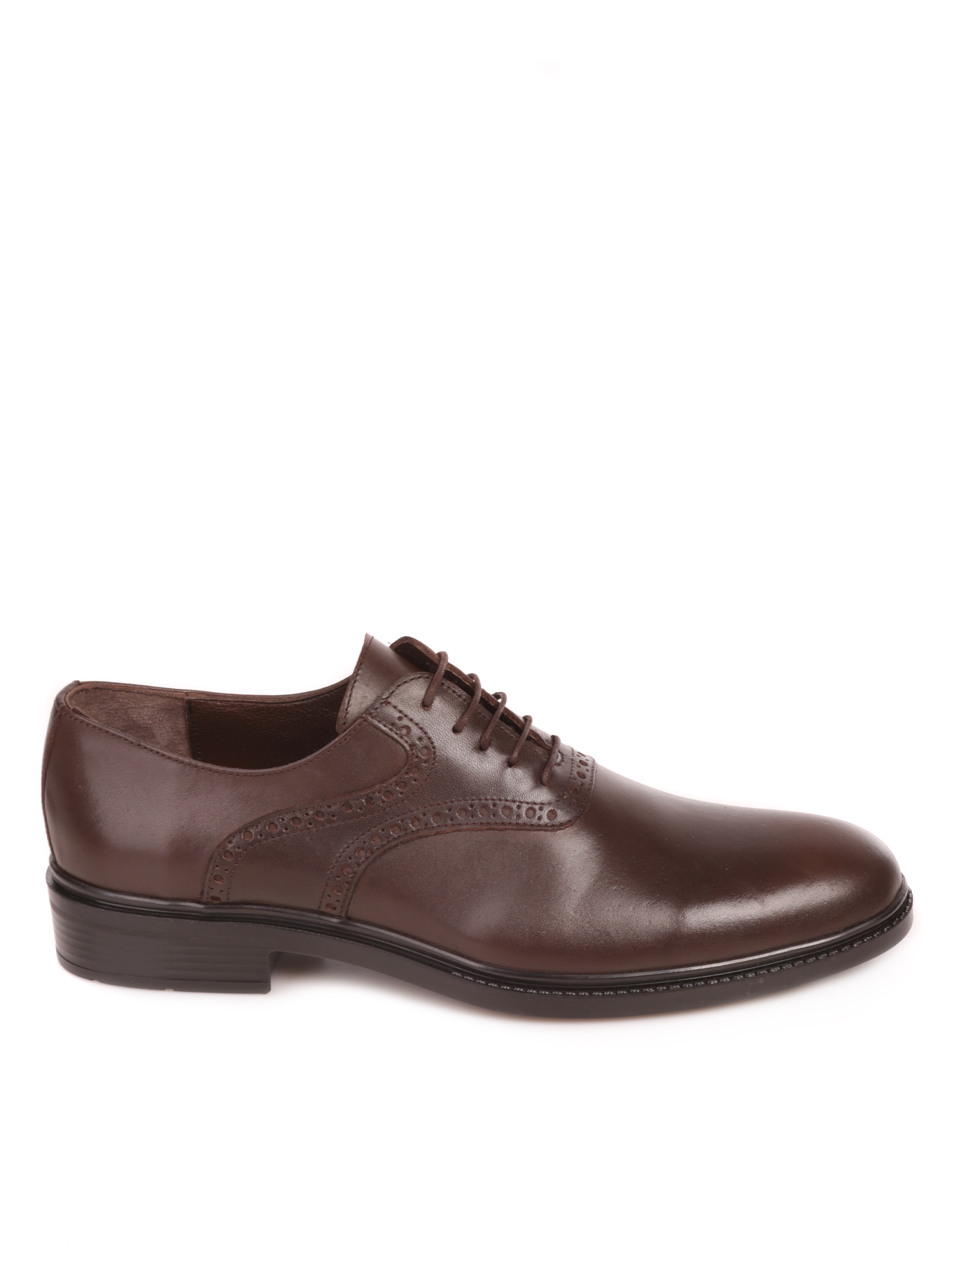 Елегантни мъжки обувки от естествена кожа в кафяво 7AT-23739 brown